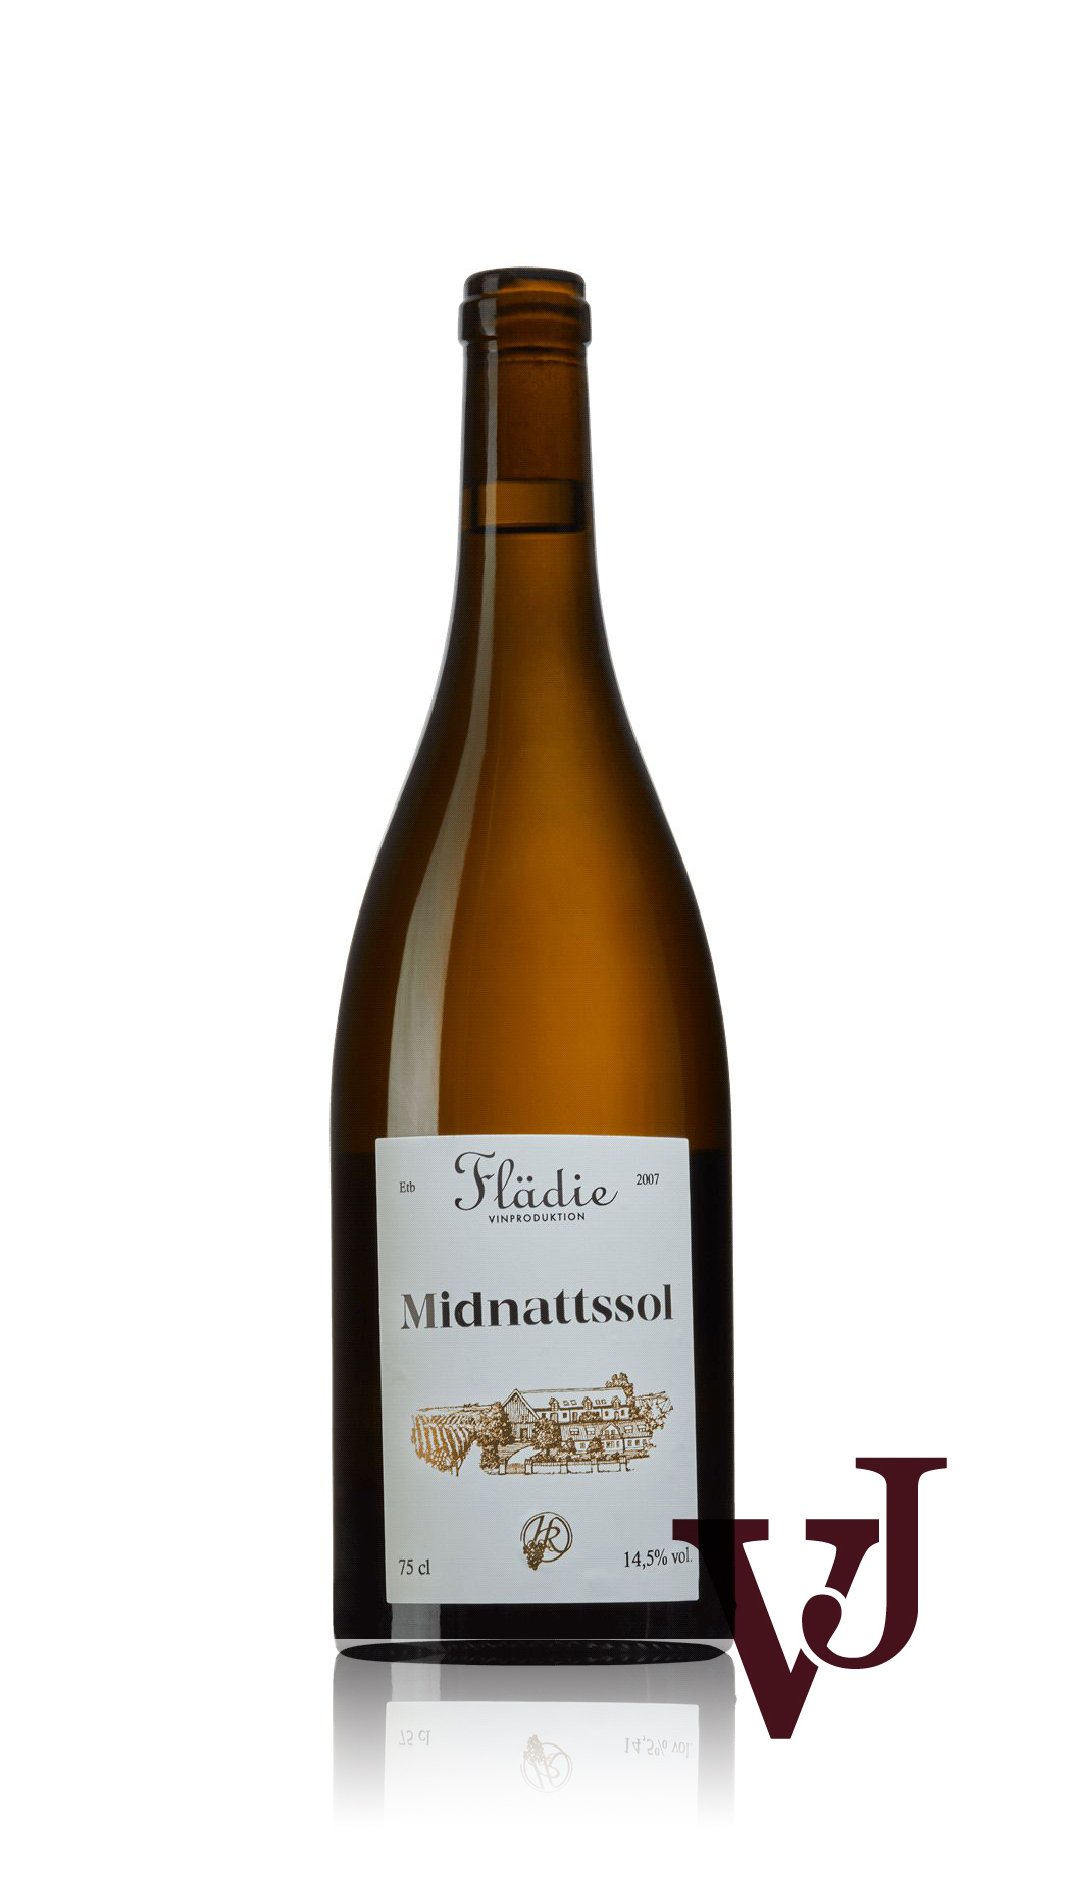 Vitt Vin - Midnattssol Flädie Vingård artikel nummer 3968801 från producenten Flädie Vingård och Vinproduktion från Sverige.